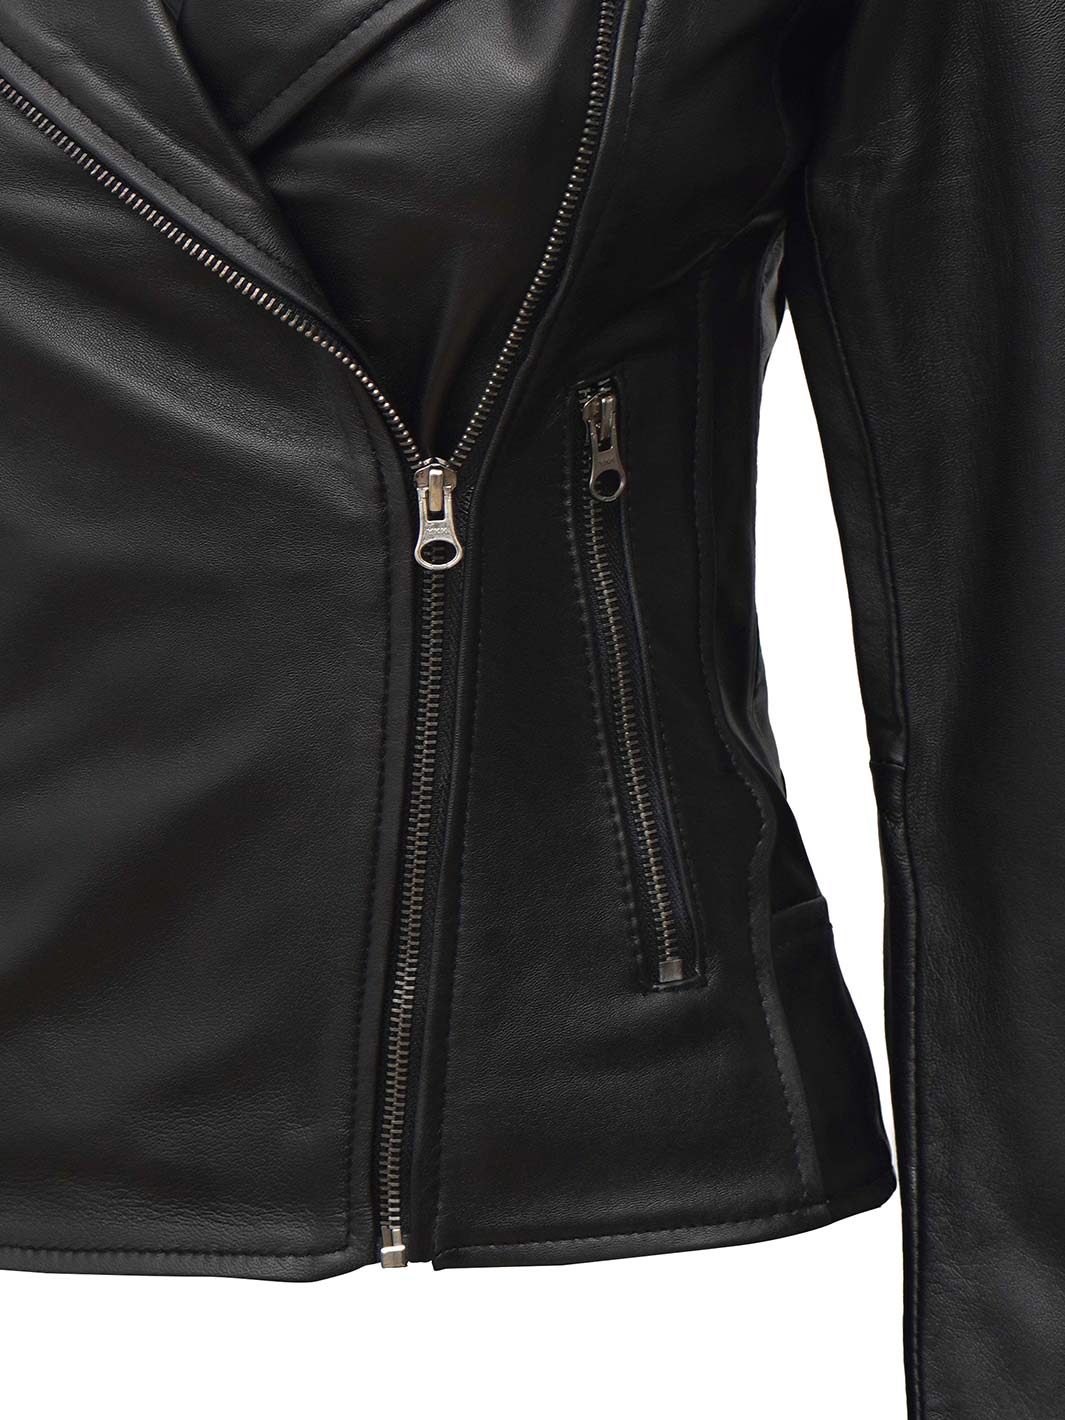 Real Leather Biker Jacket For Men